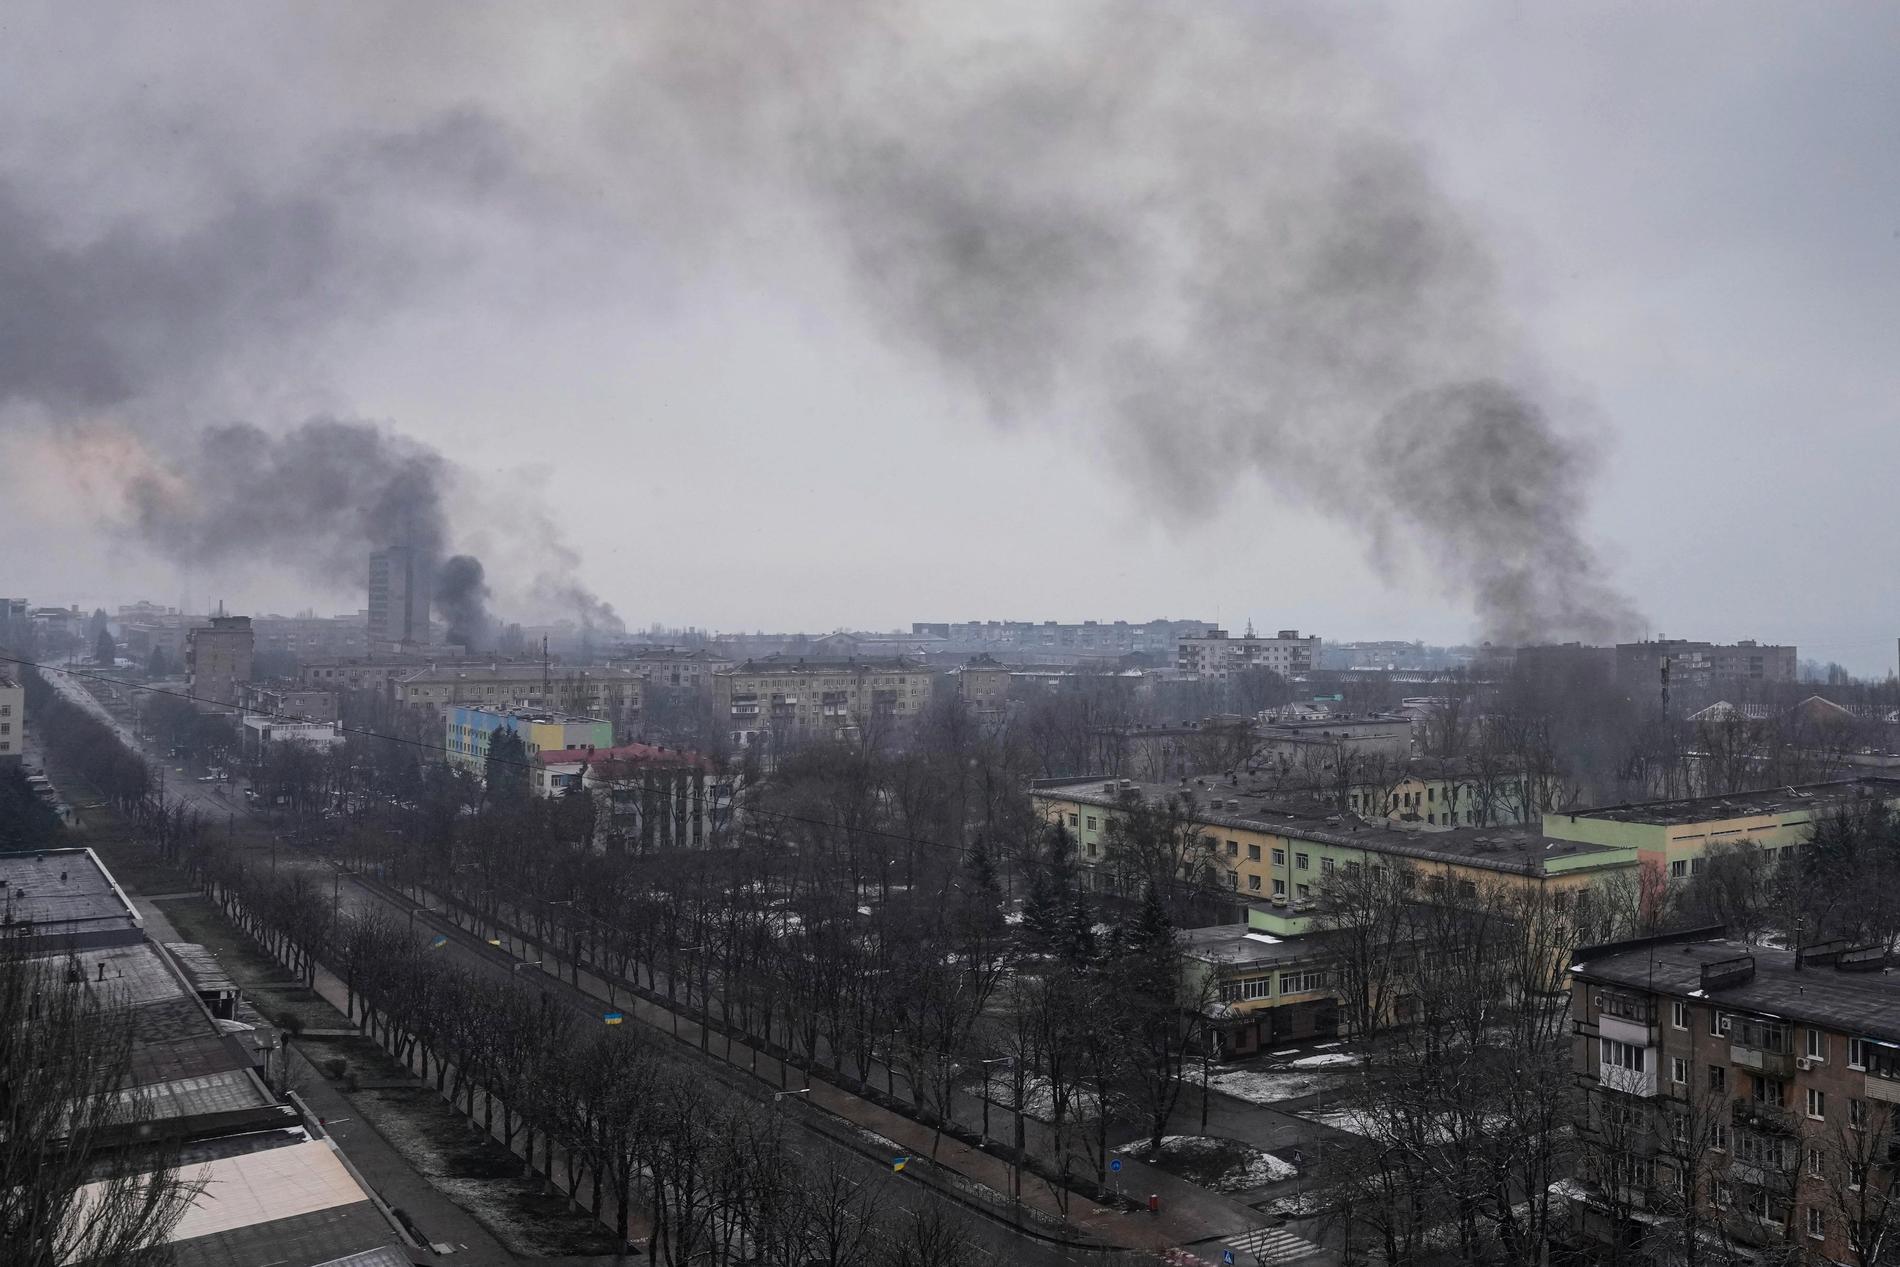 Nu varnar USA för att Ryssland kan planera en attack med kemiska vapen mot Ukraina. Bilden från Mariupol efter en flygattack.